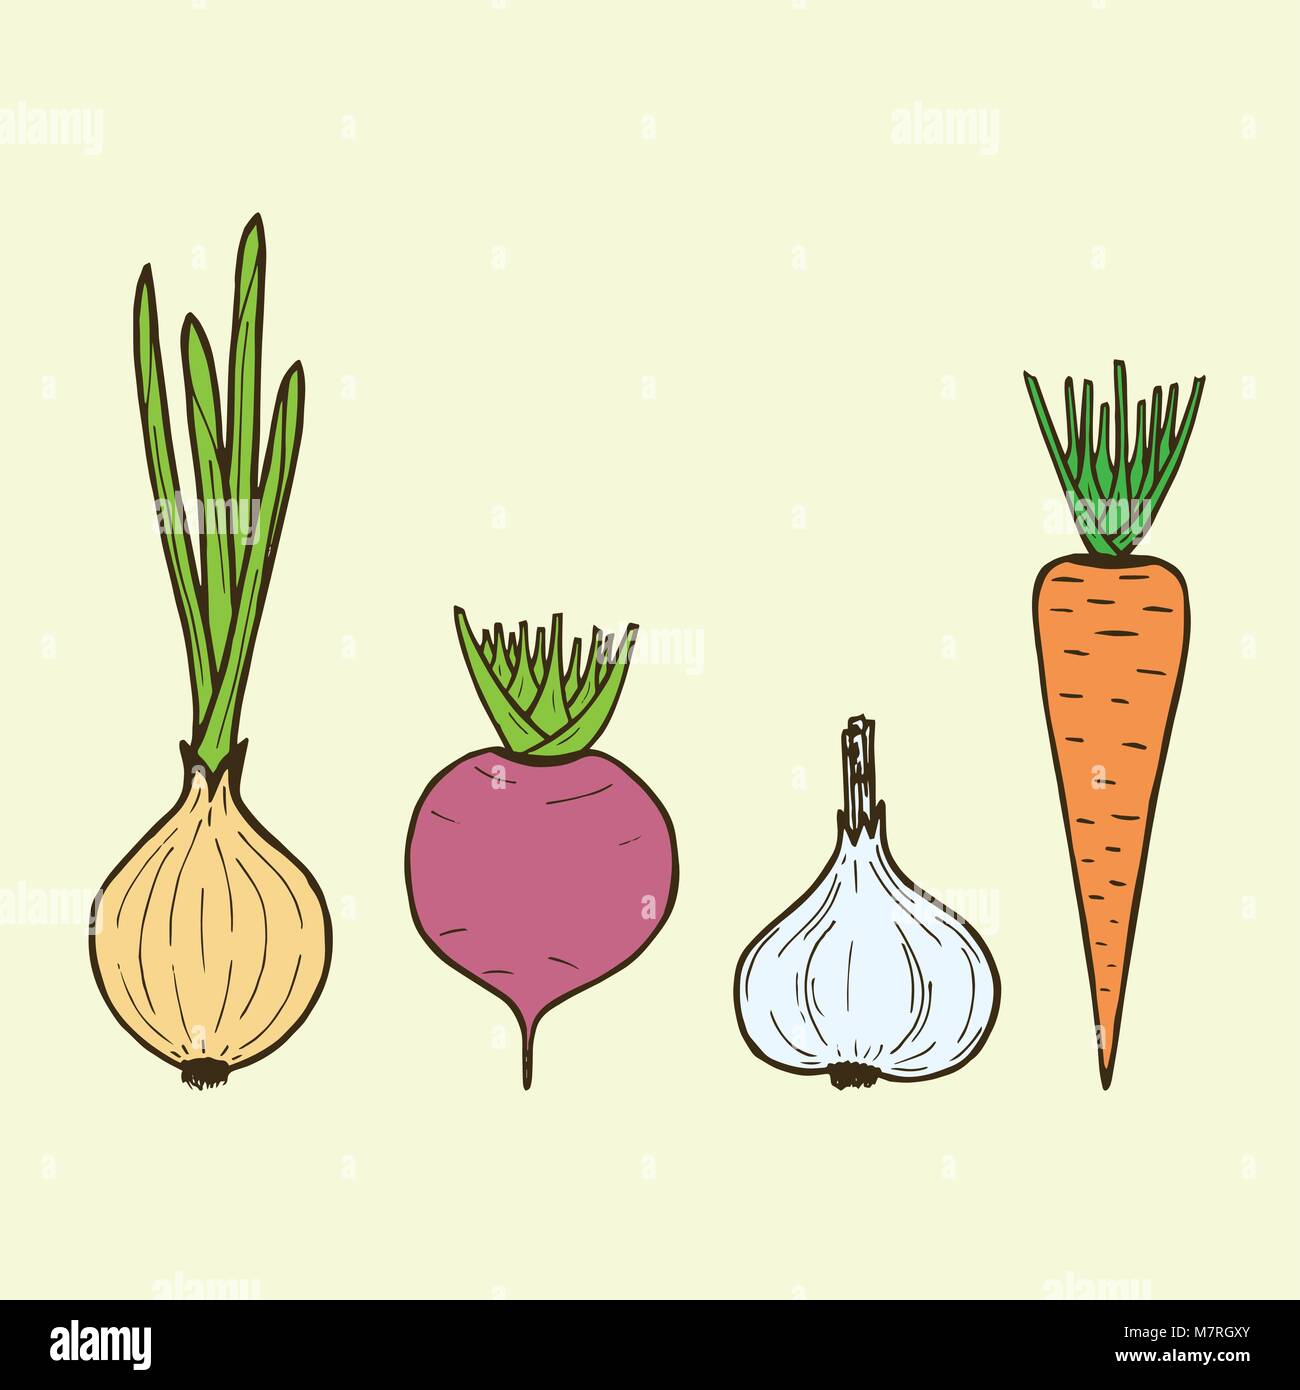 Лук репчатый морковь свекла. Зеленый лук морковь свекла овощи вектор. Картина для кухни пучок с овощами свекла, морковь, лук нарисовать.